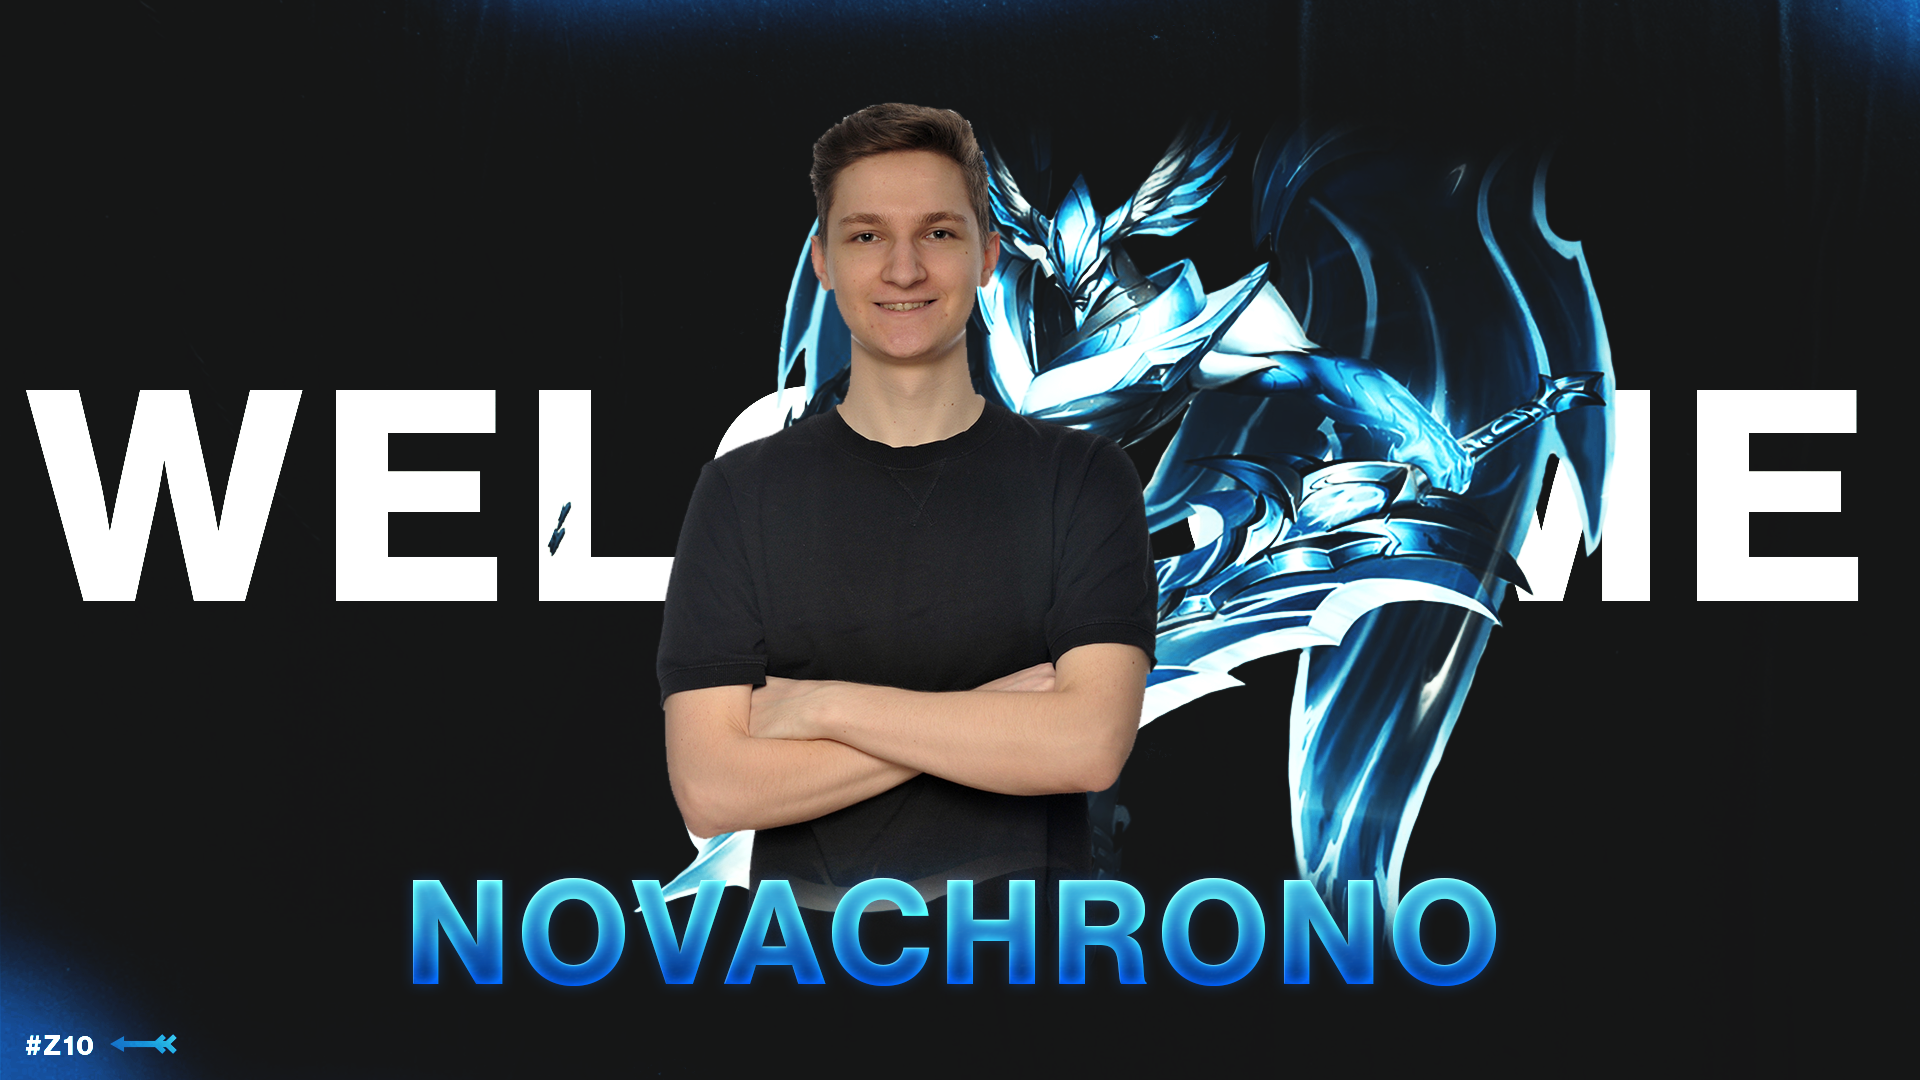 Novachrono, Balkan takımlarından Zero Tenacity'e transfer oldu